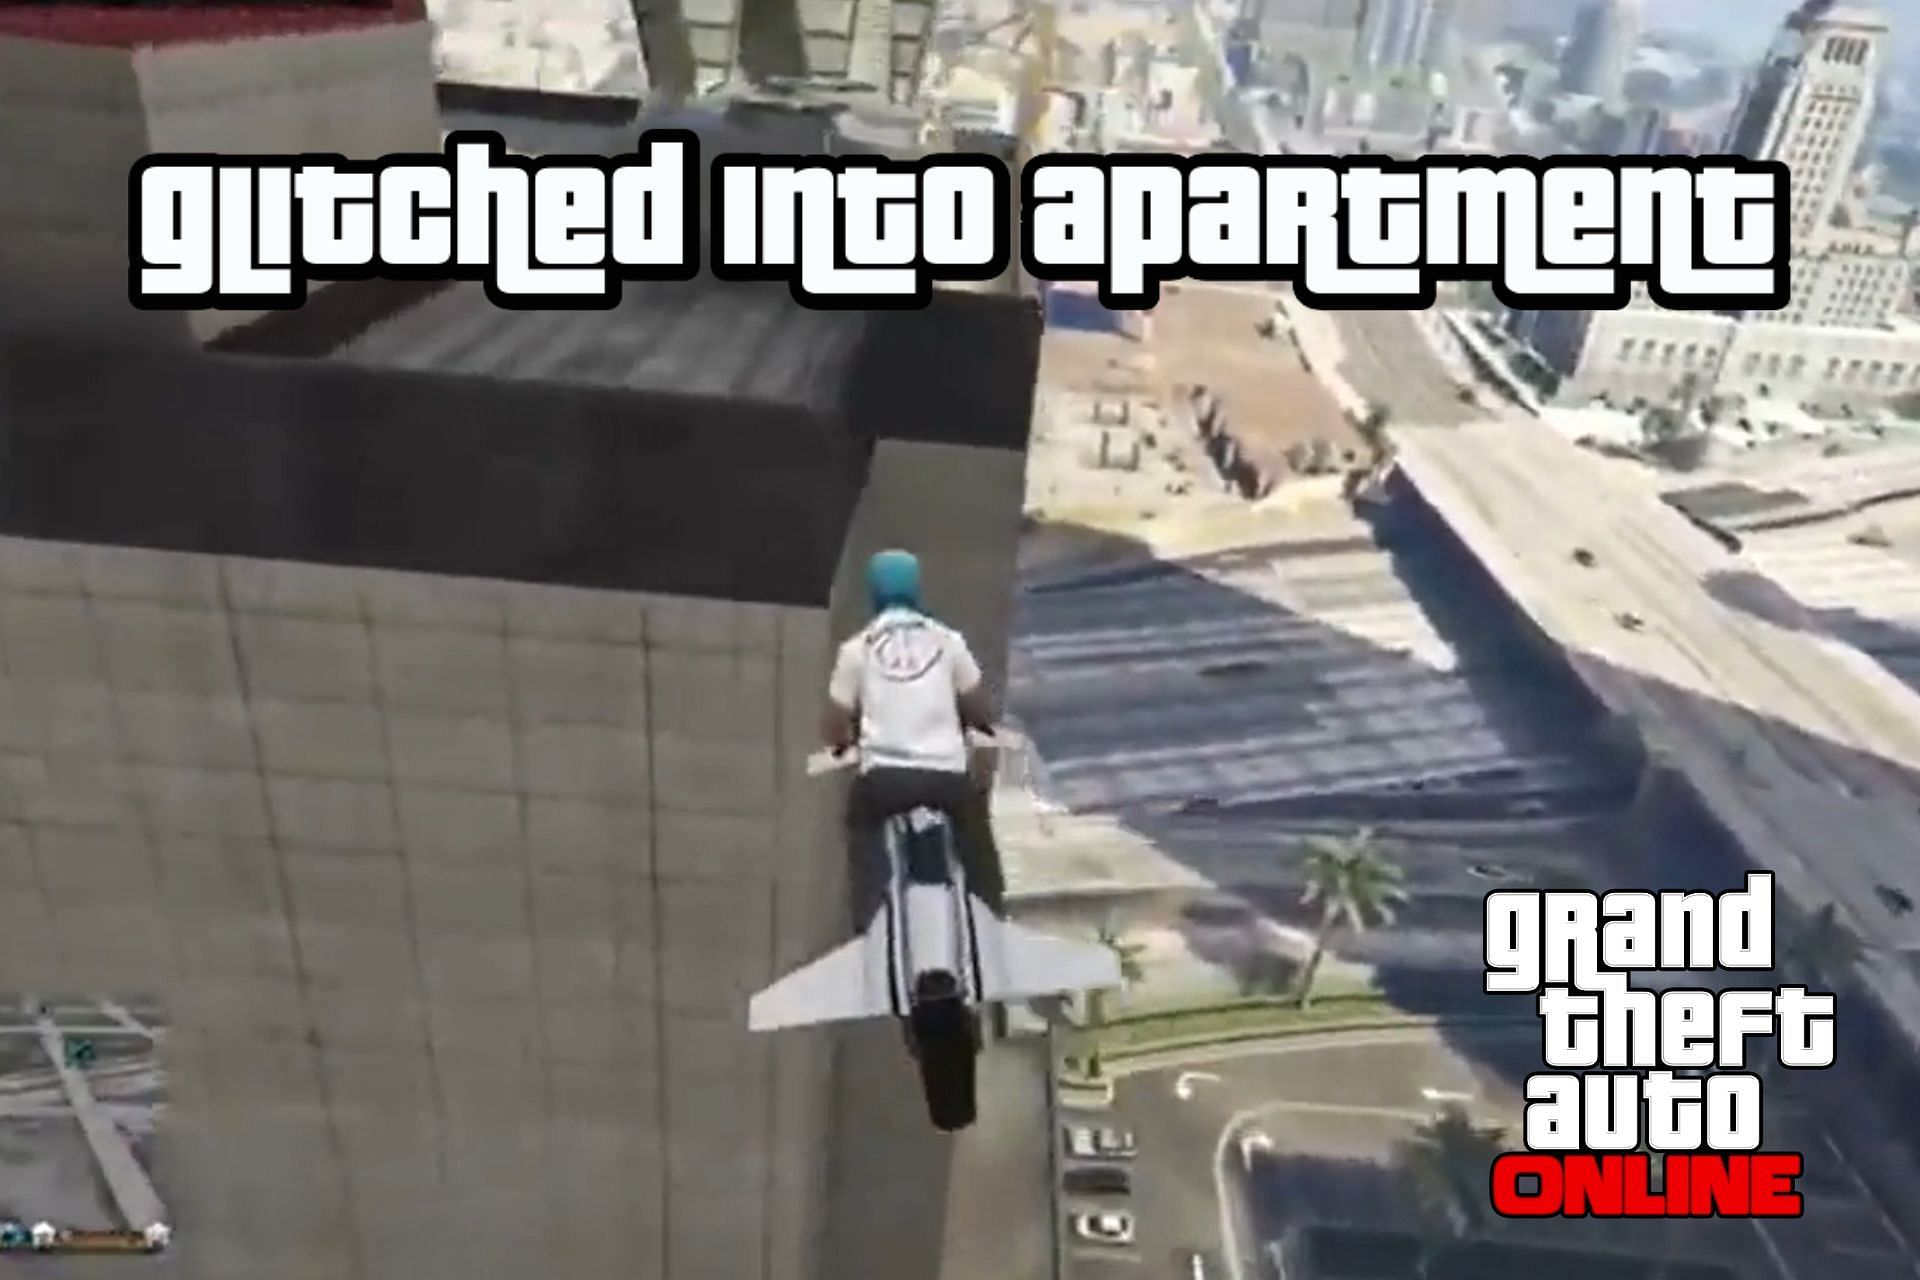 GTA Online glitch sends player inside the building (Image via Reddit)